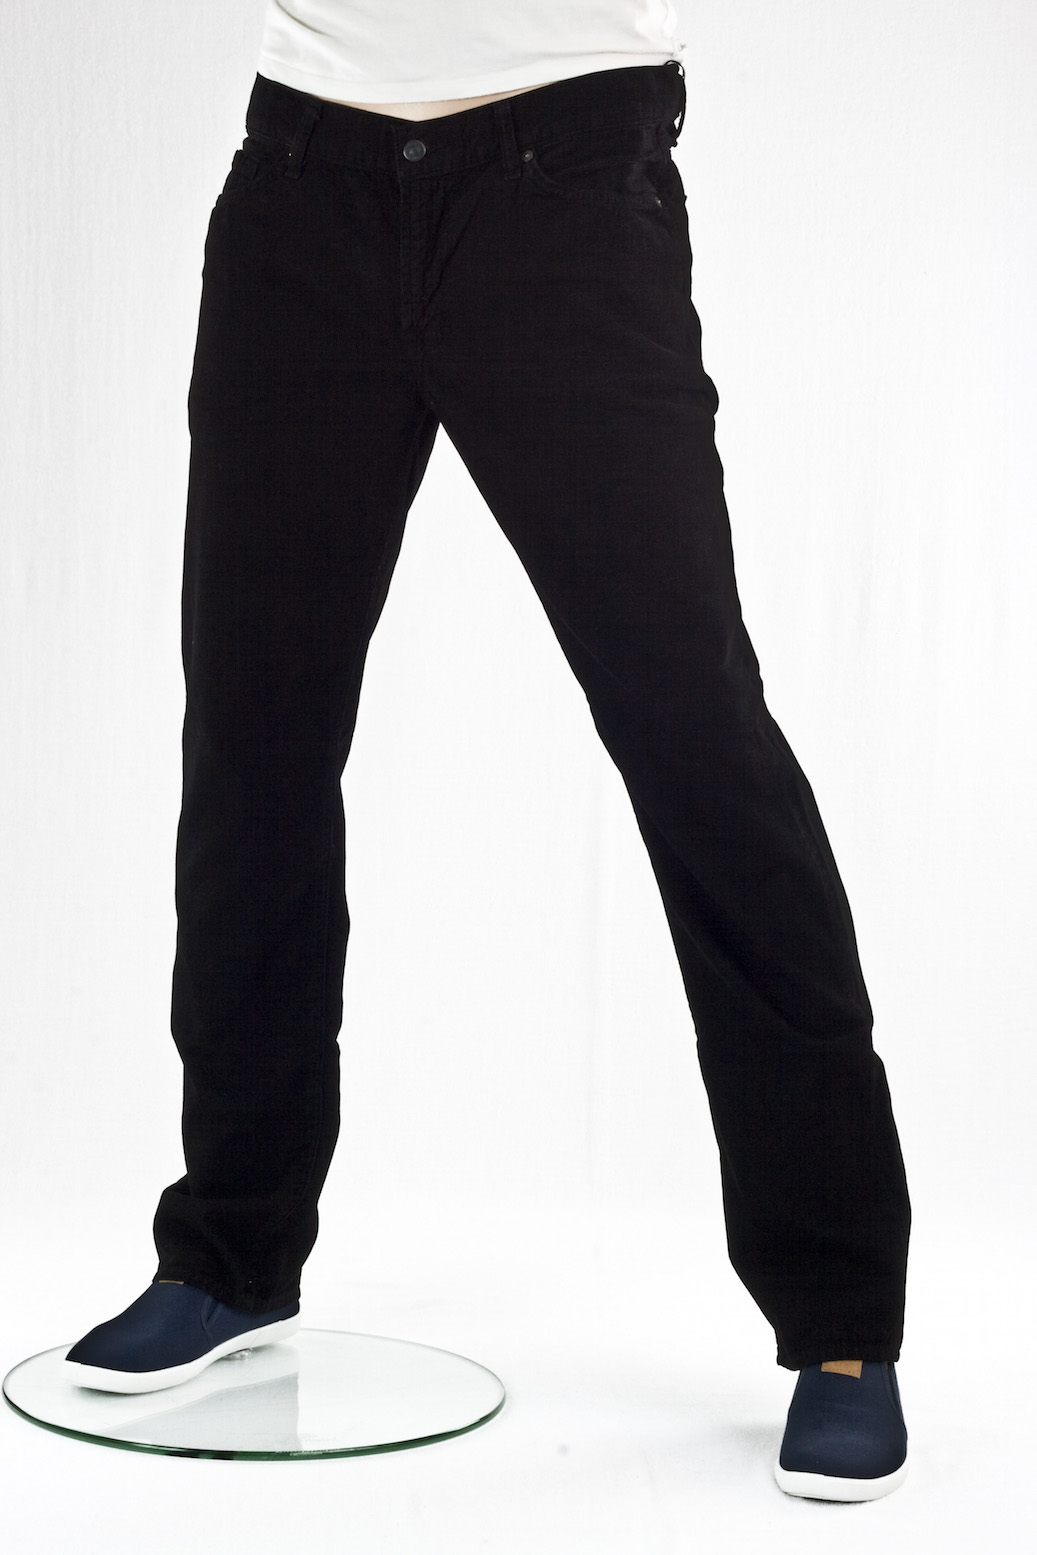 джинсы мужские 7 for all Mankind вельветовые свободные Black velvet lean